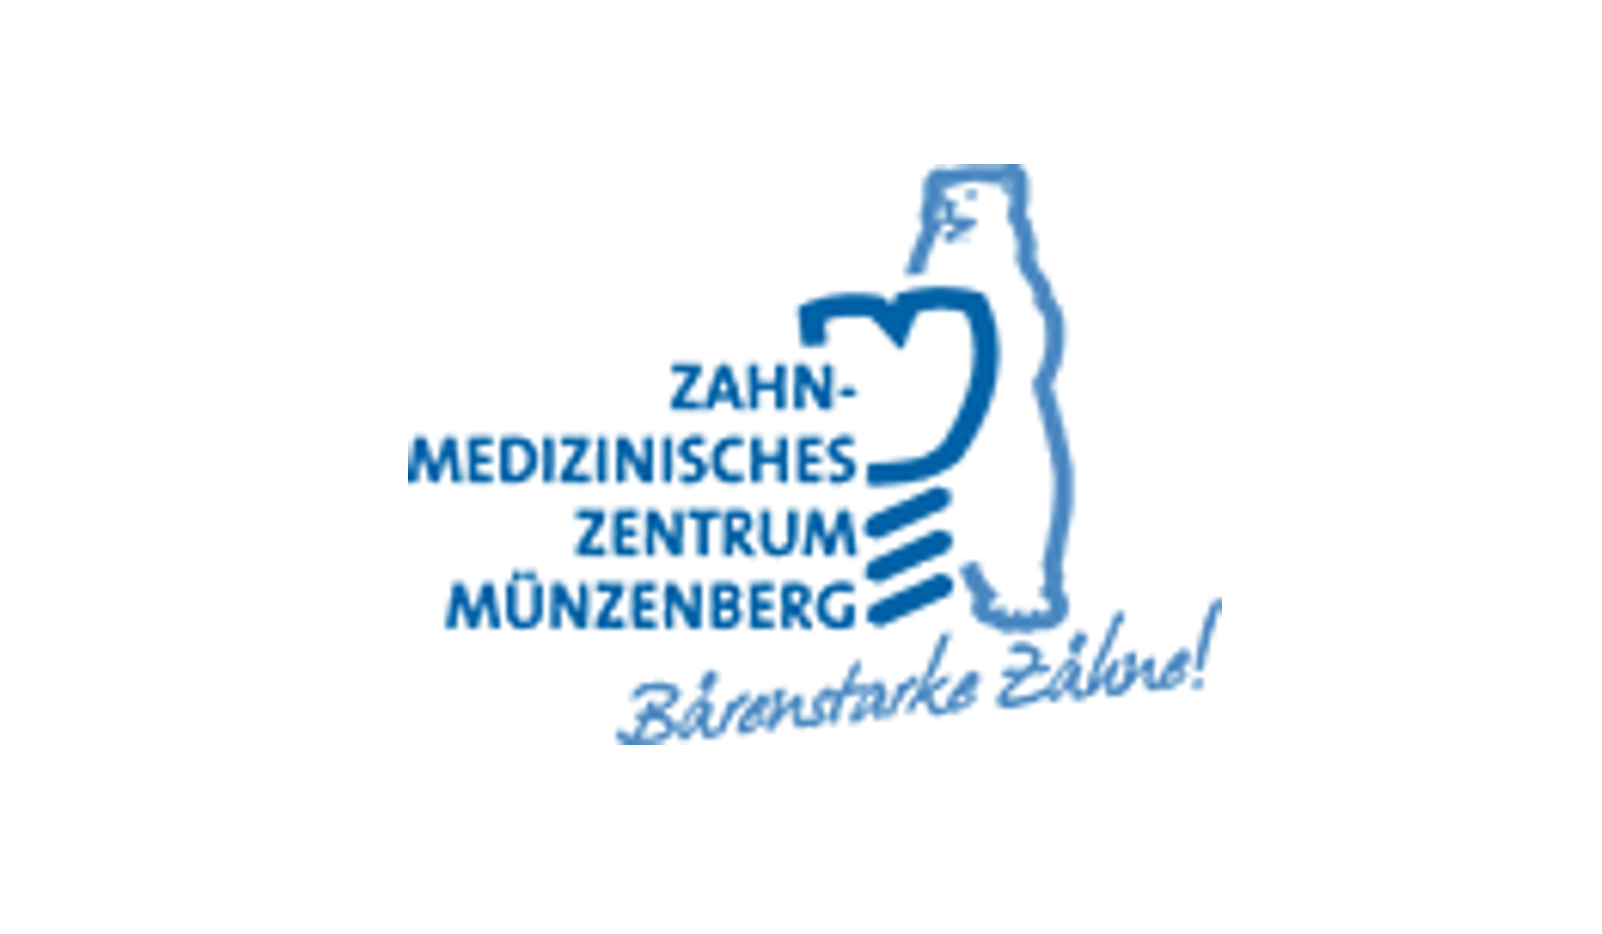 Zahn-Medizinisches Zentrum Münzenberg